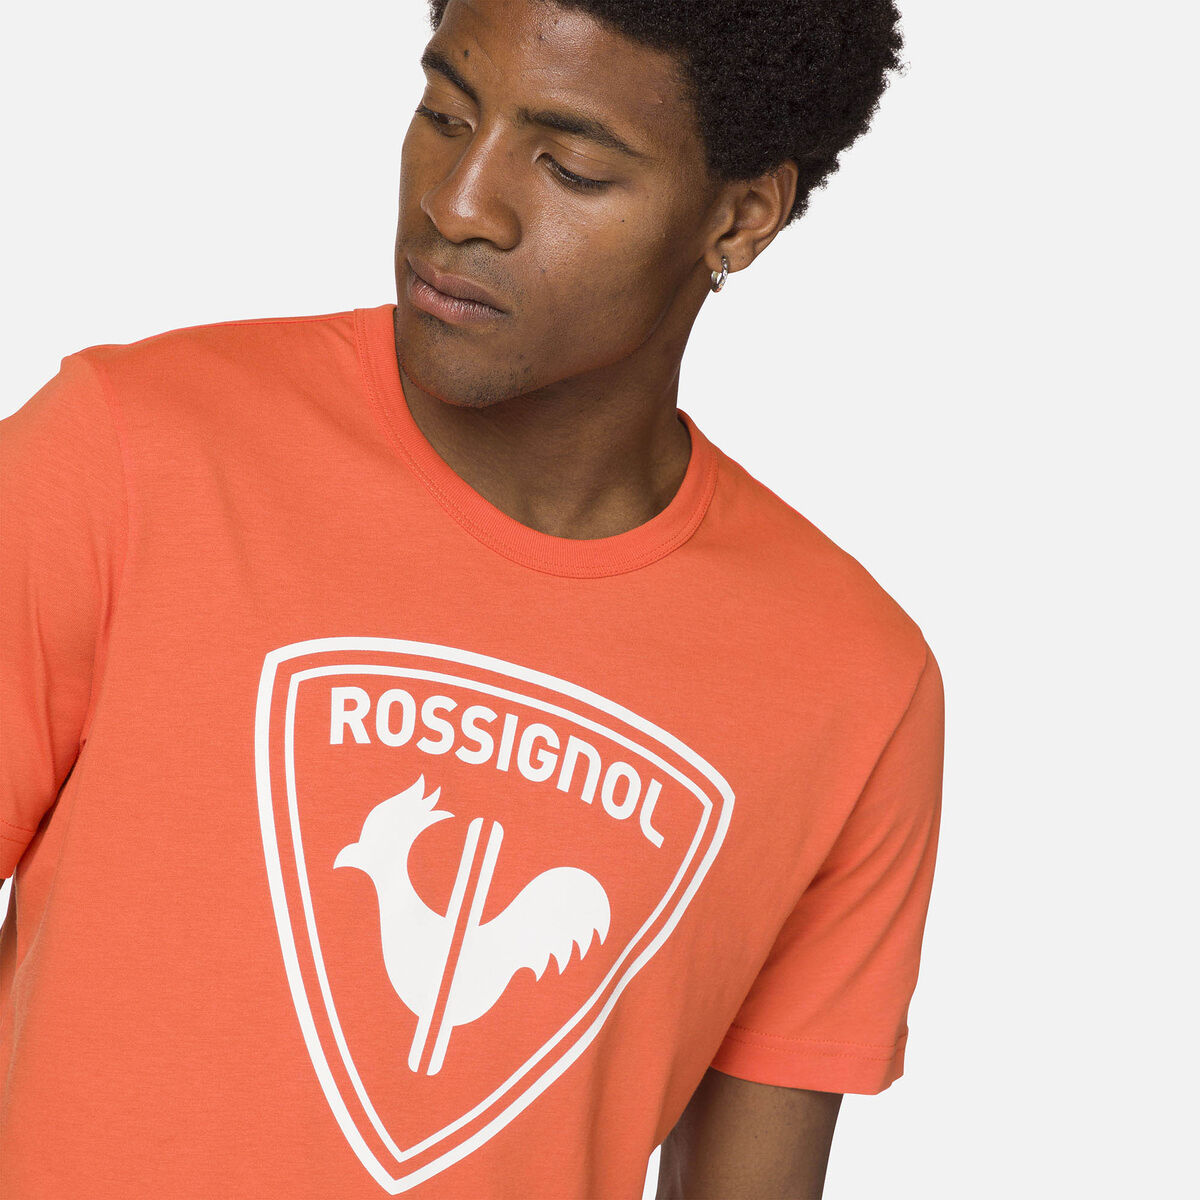 Rossignol T-shirt Logo Rossignol Homme orange